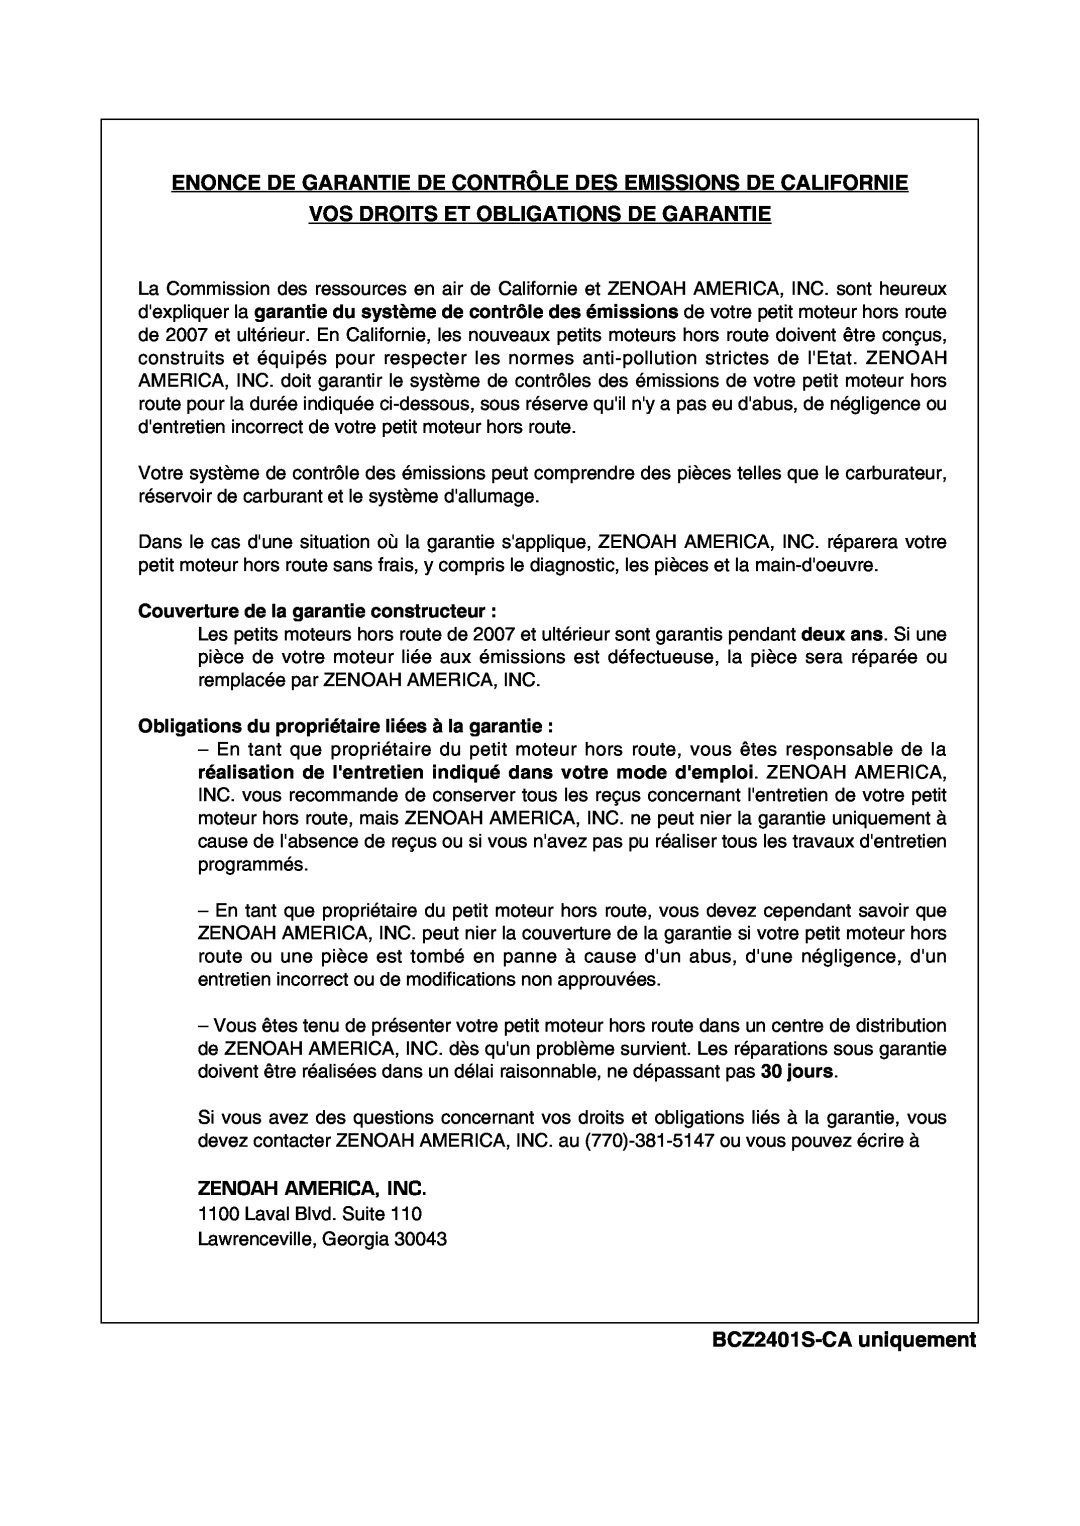 RedMax BCZ2401S-CA manual Enonce De Garantie De Contrôle Des Emissions De Californie, Vos Droits Et Obligations De Garantie 